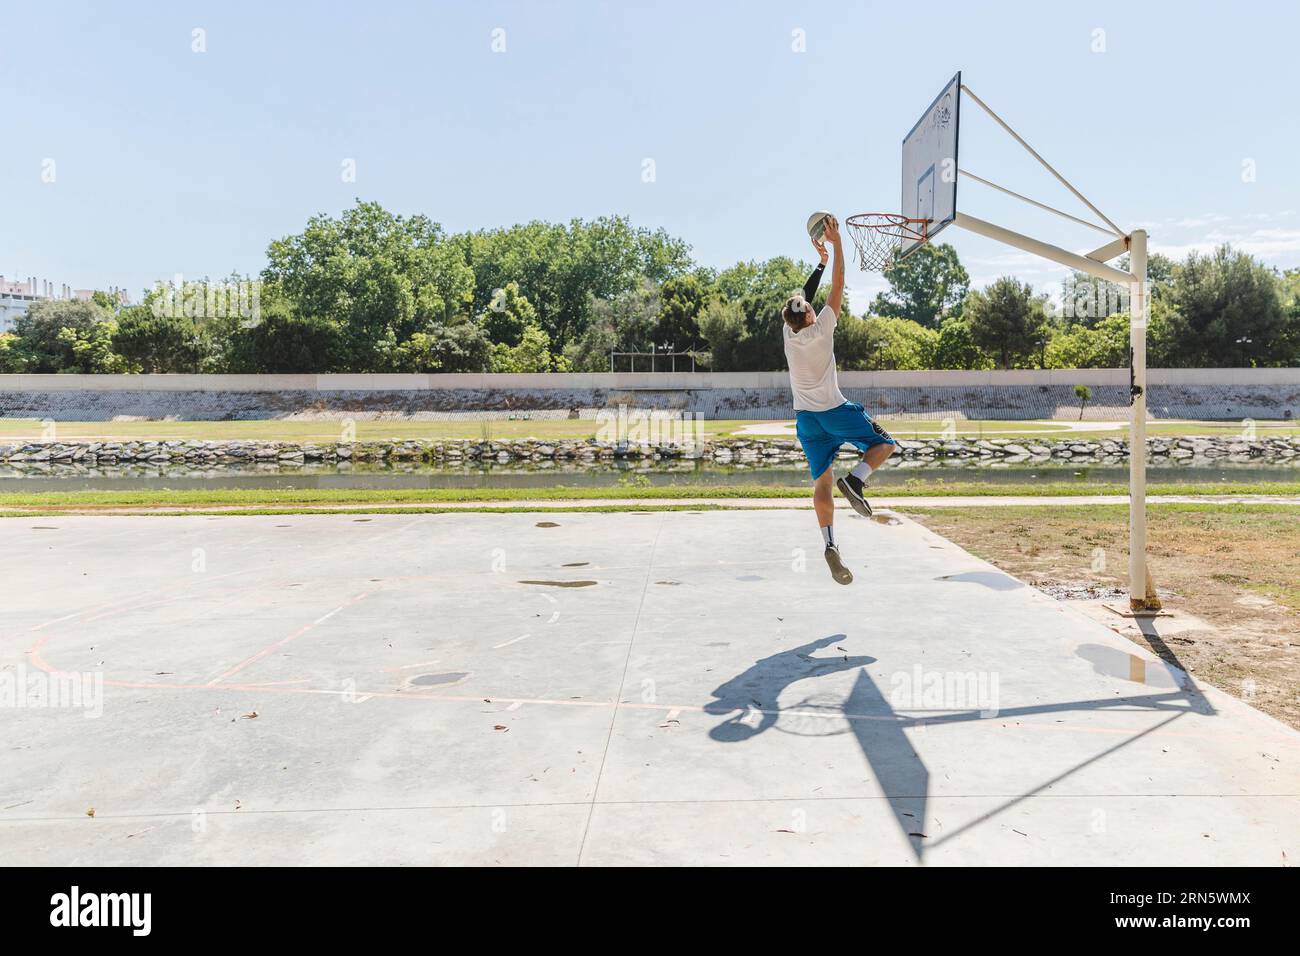 Joueur de basketball lançant un panier de basketball Banque D'Images